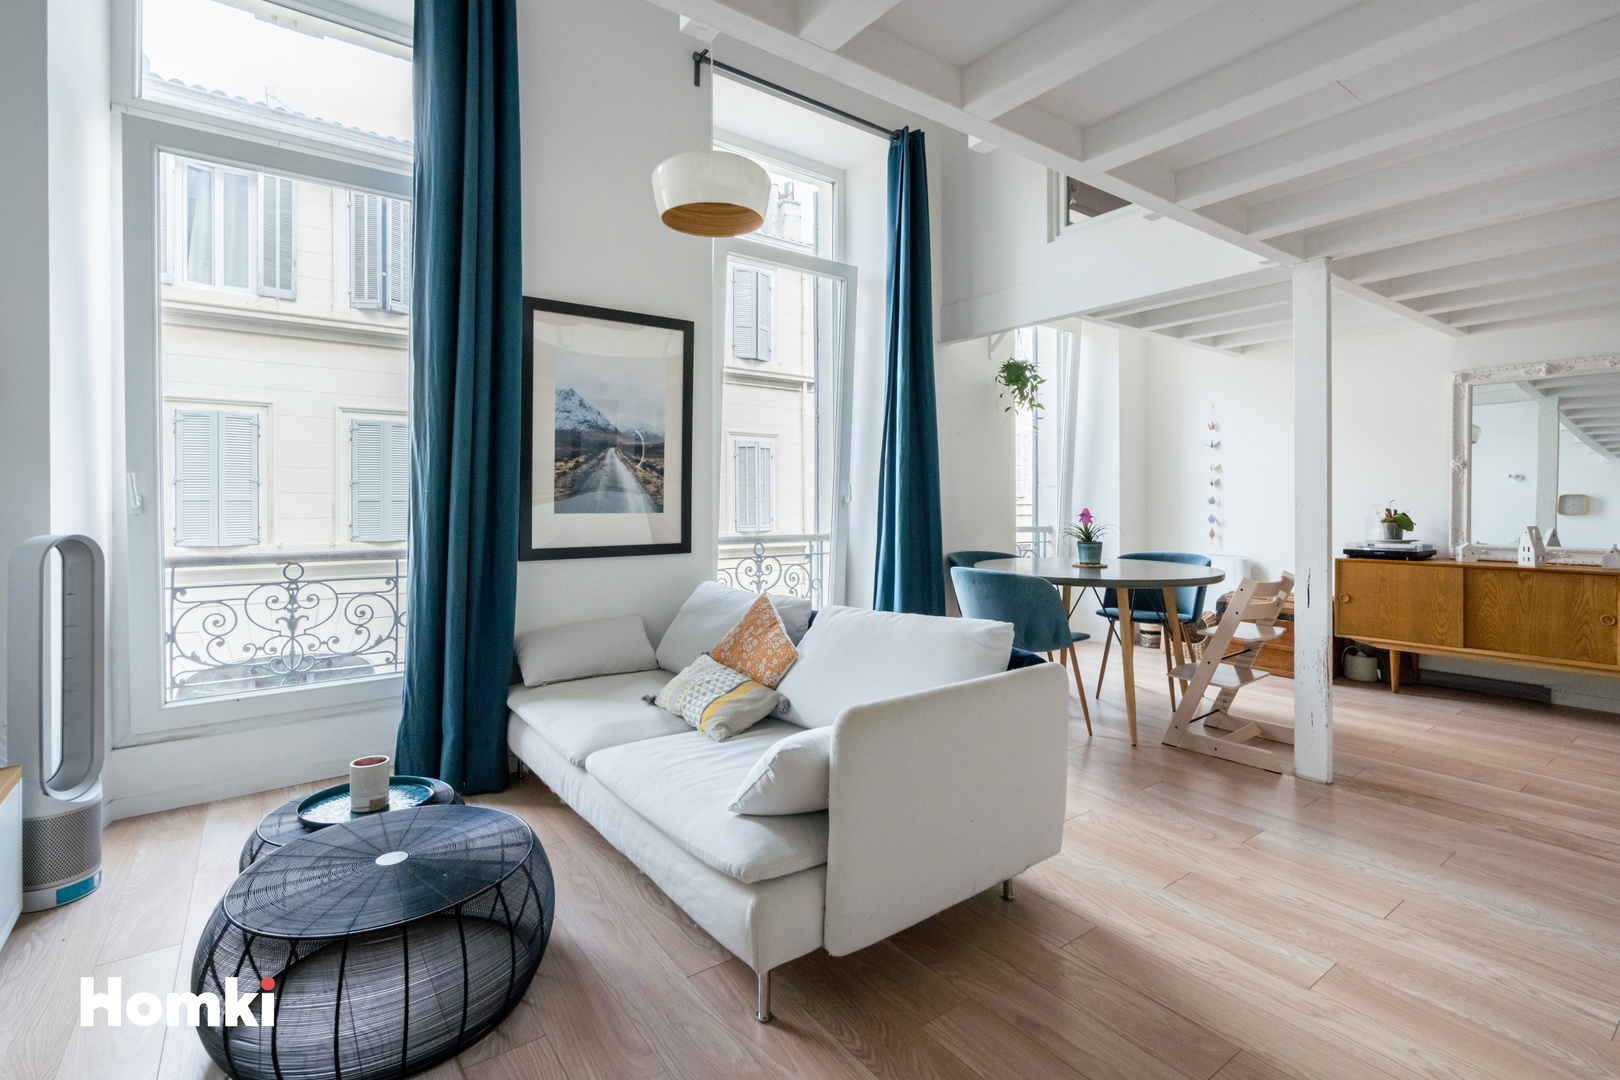 Homki - Vente Appartement  de 72.0 m² à Marseille 13006